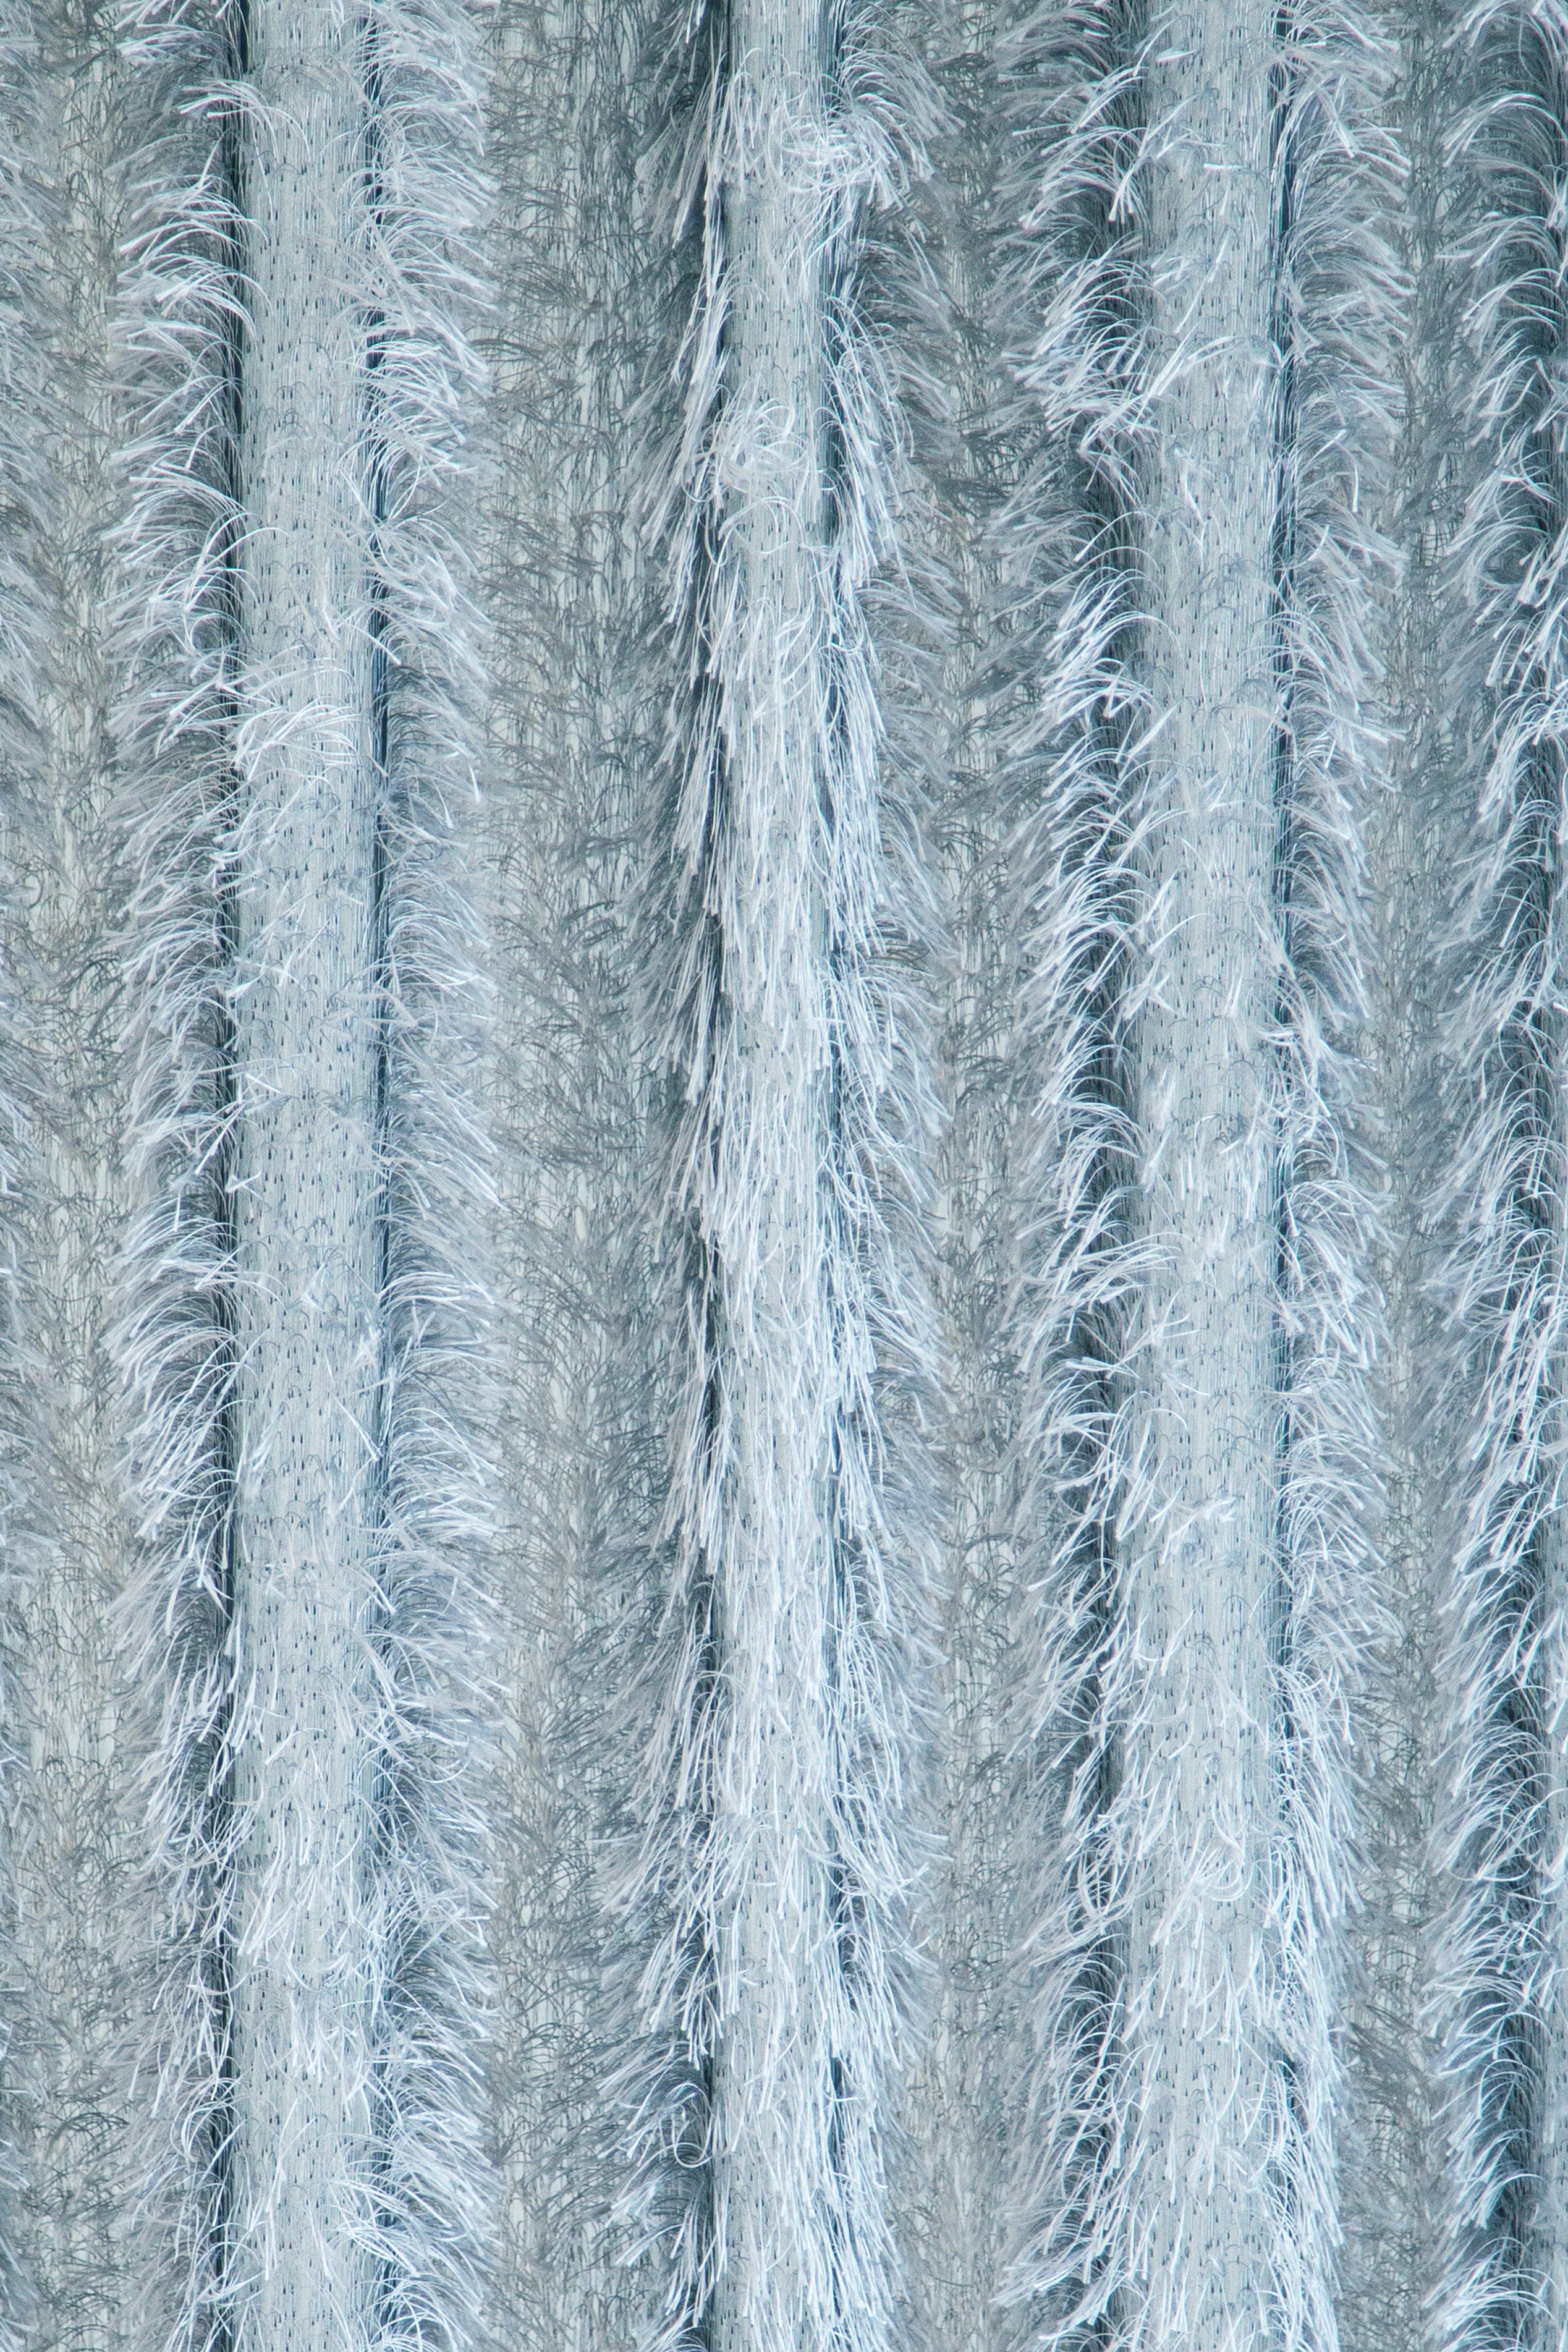 Fertigschal Loik silber mit verdeckter Schlaufe BxH 140x245cm